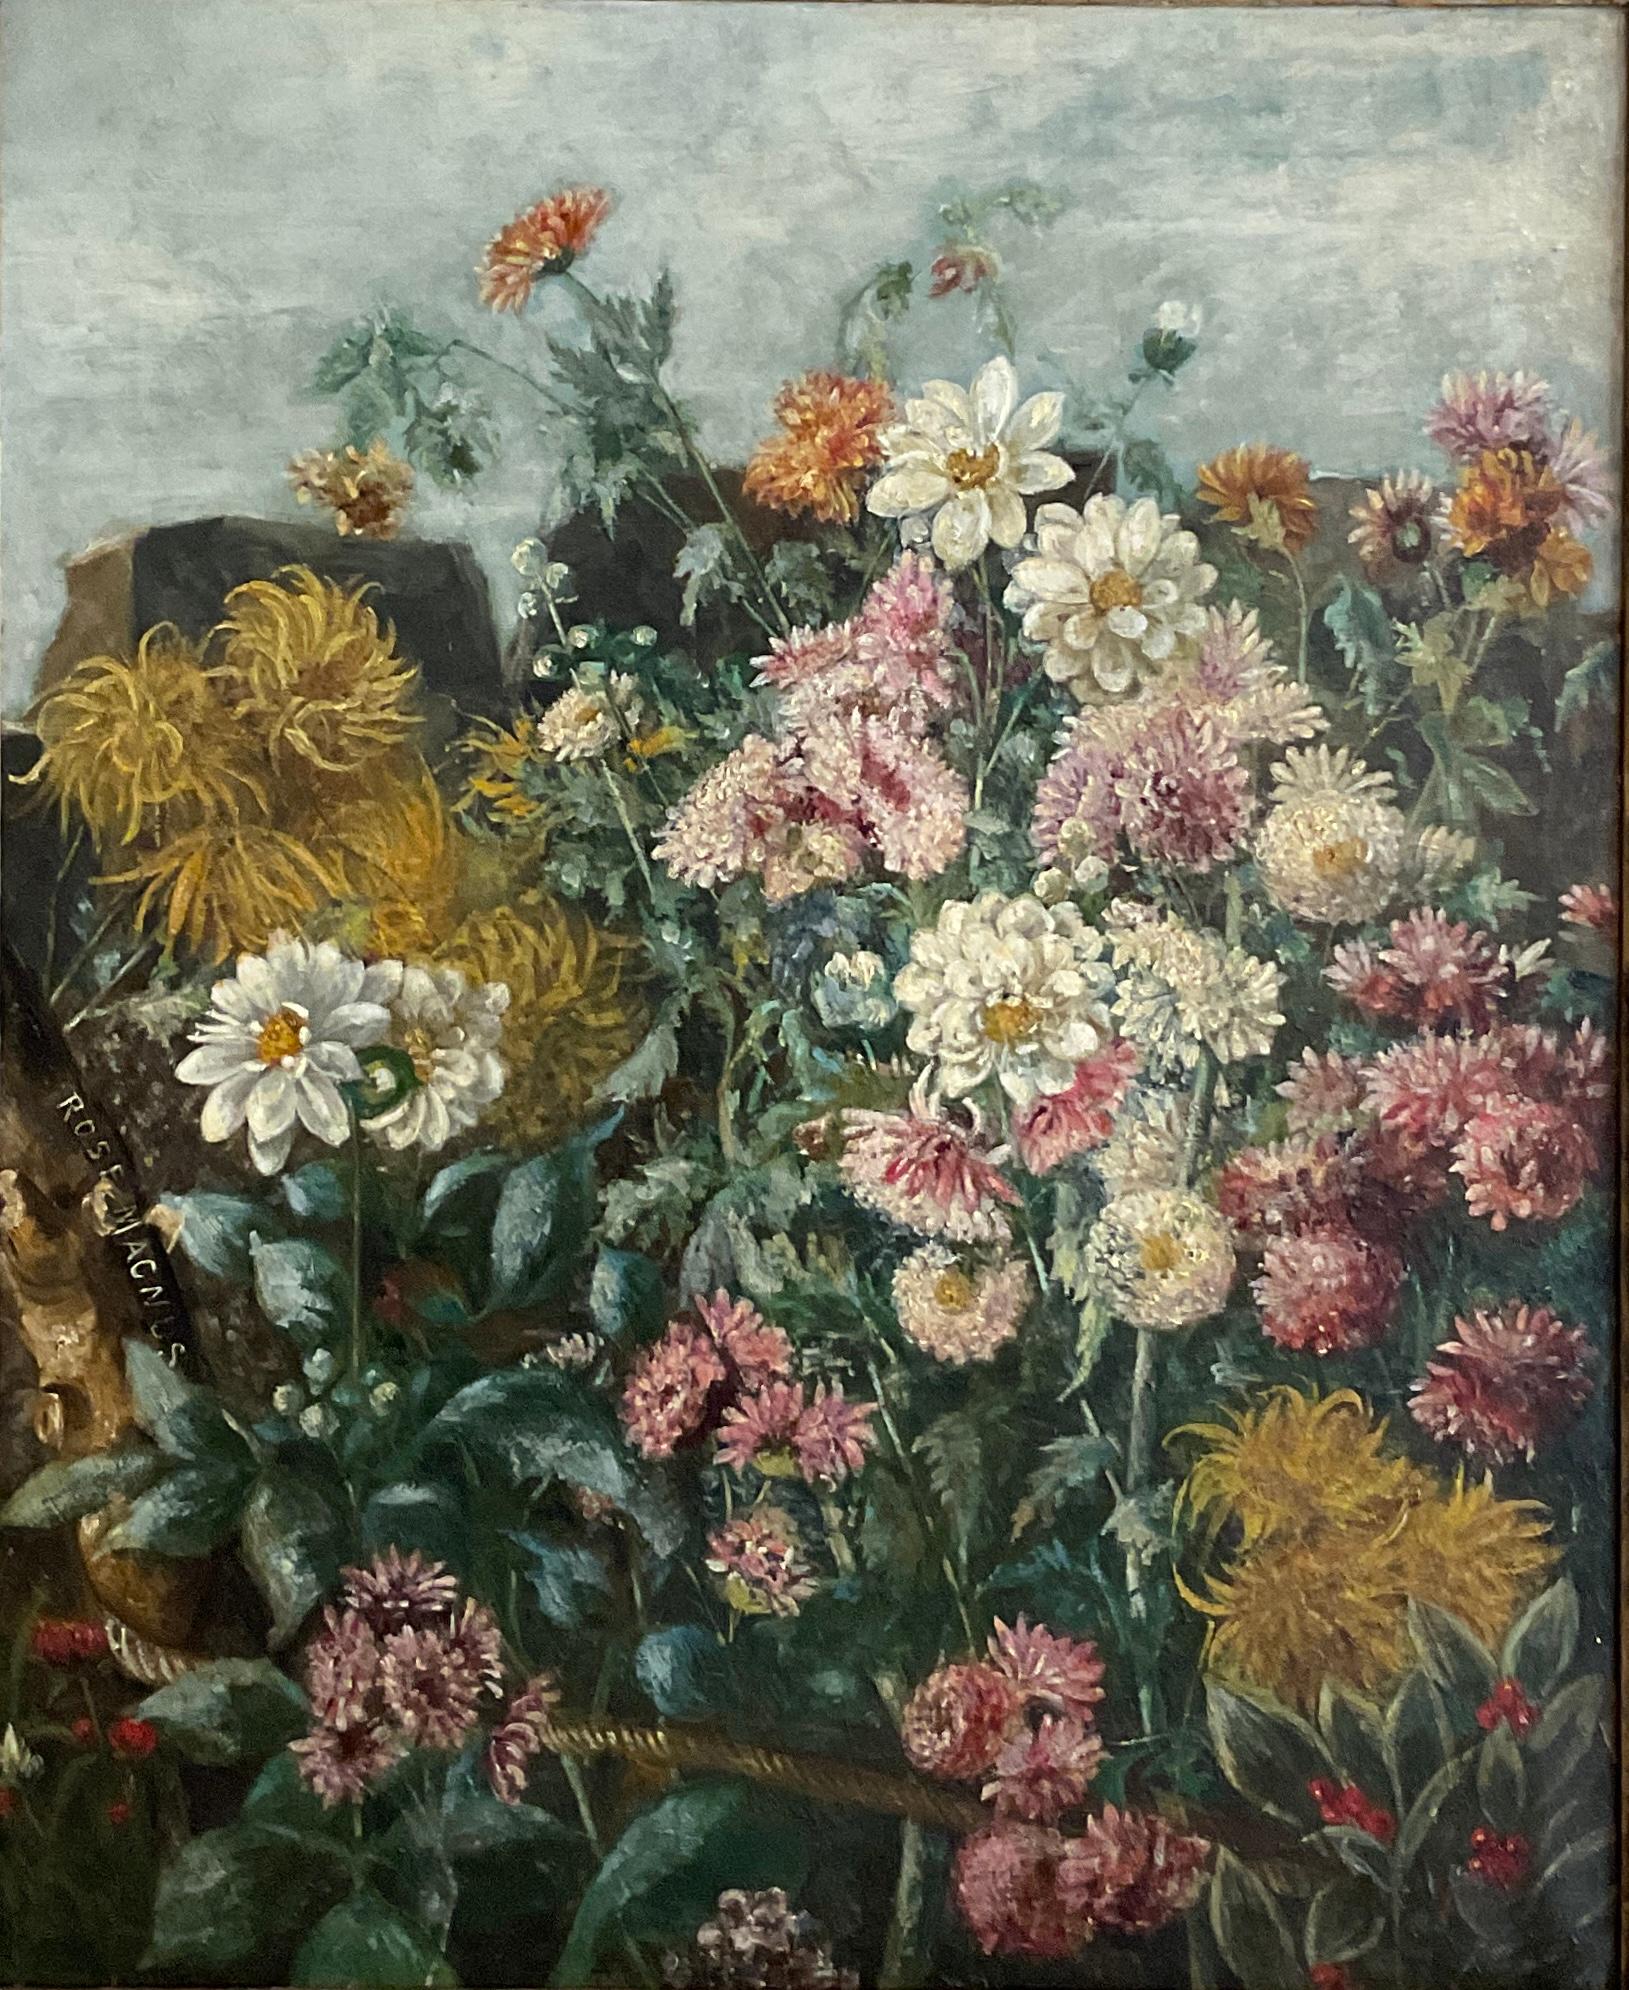 Peinture originale de l'artiste britannique Rose Magnus (1859-1900). Ses œuvres d'art sont exposées dans les musées de Sheffield.
Un travail traditionnel étonnant dans ce joli bouquet de fleurs. Signé.

Un beau cadre d'époque en bois doré avec une